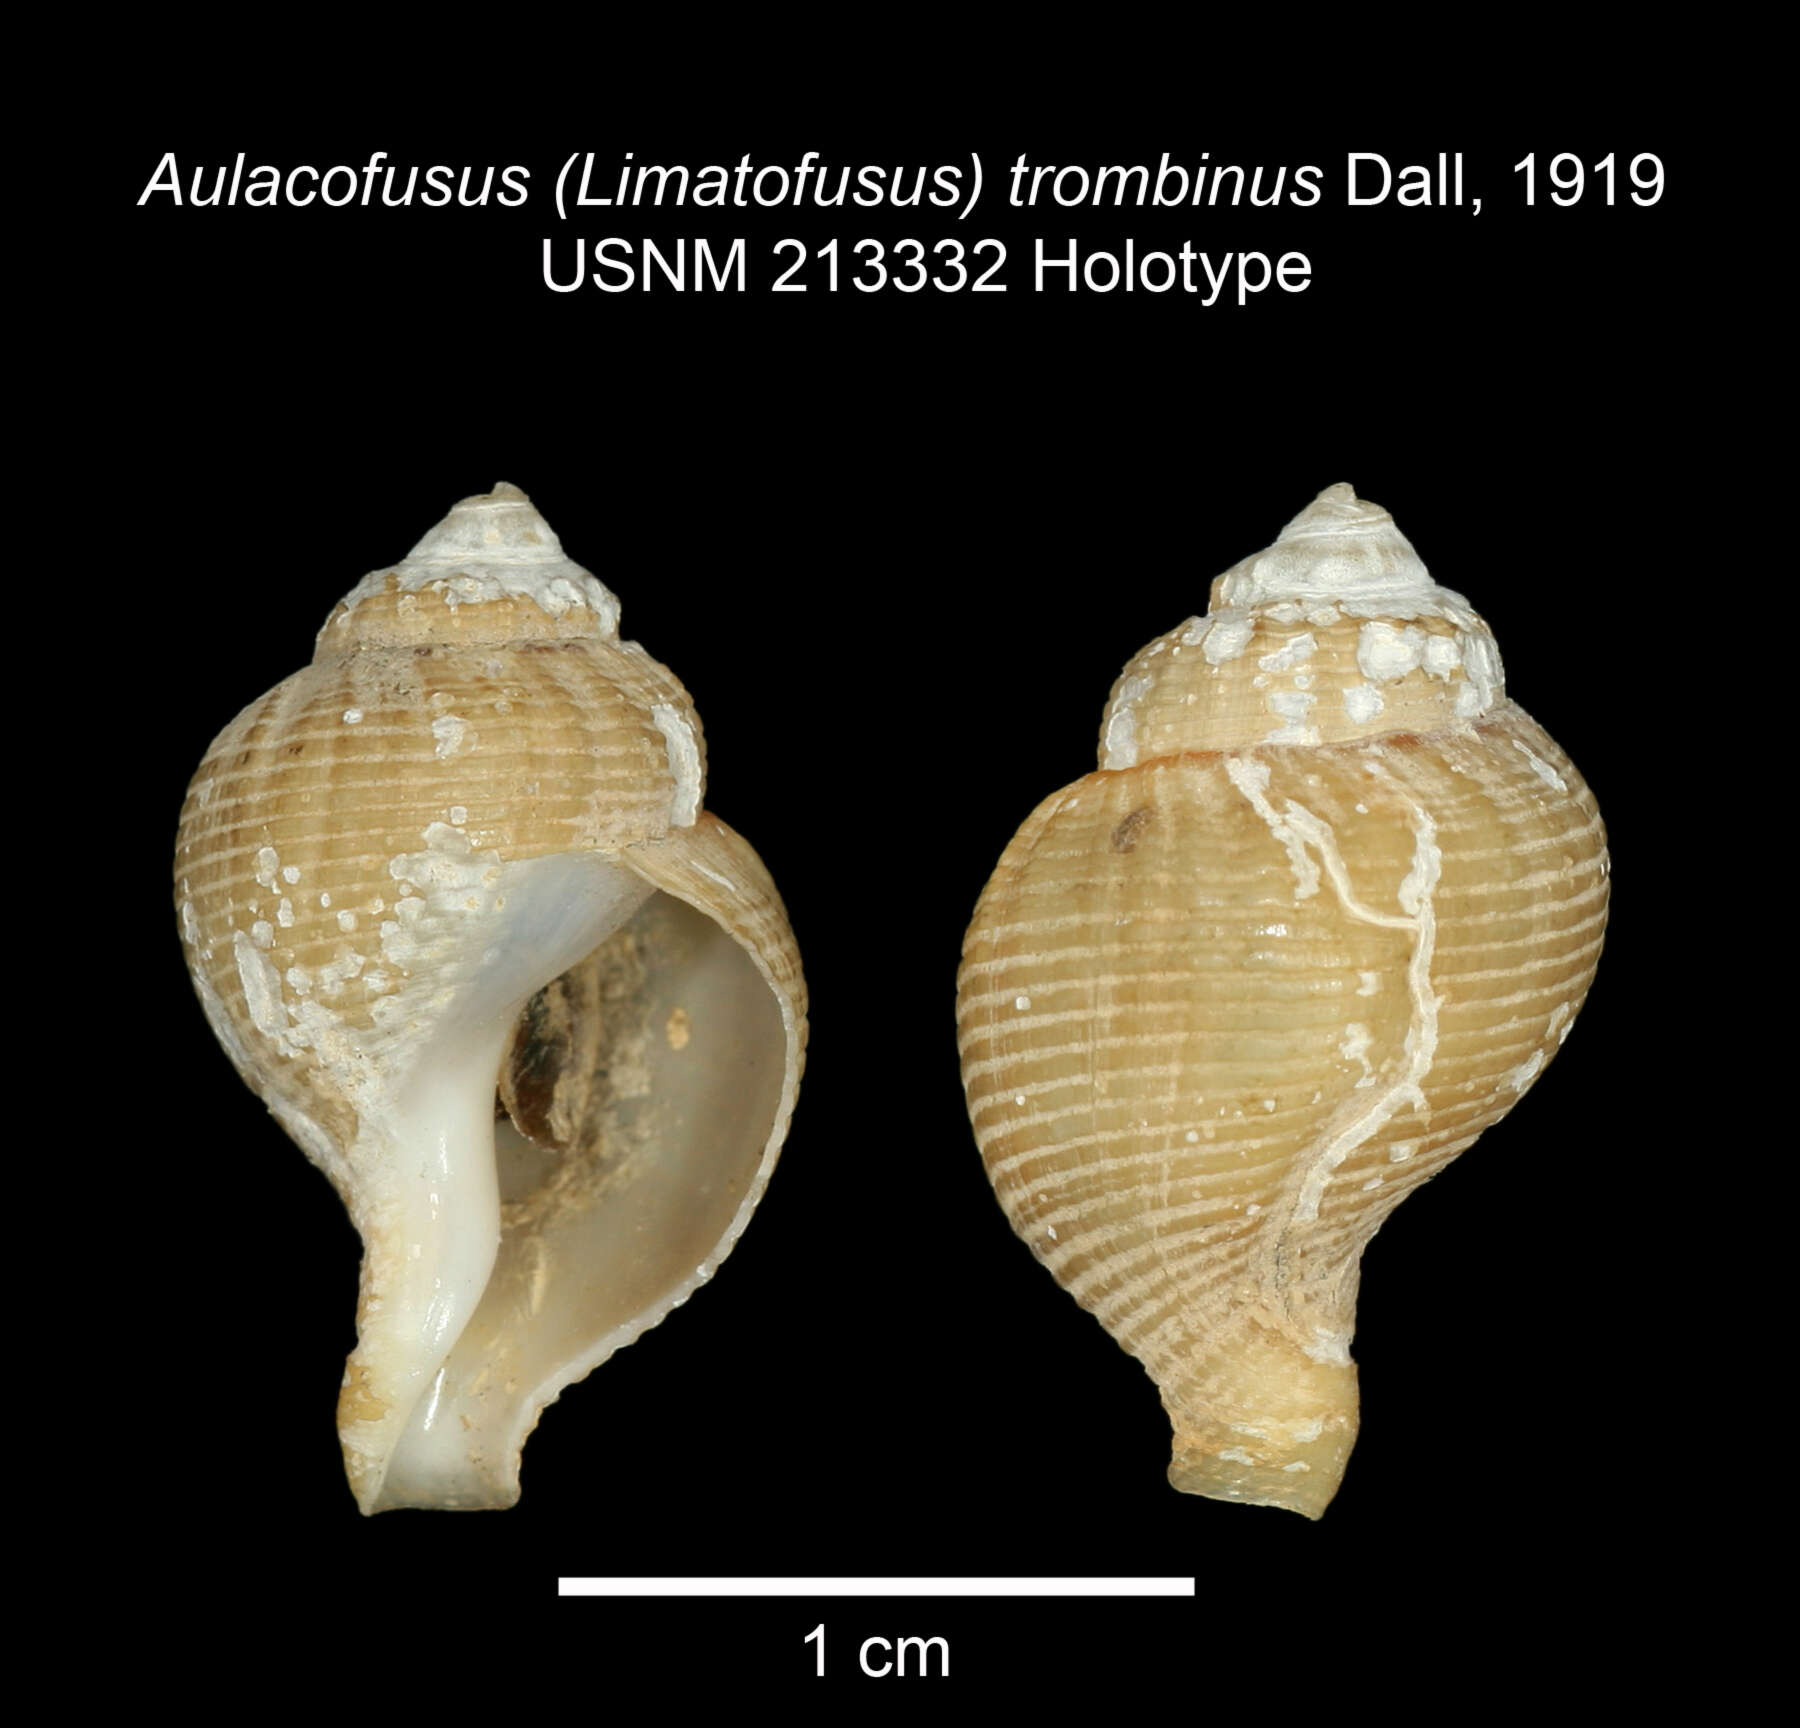 Image of Aulacofusus (Limatofusus) trombinus Dall